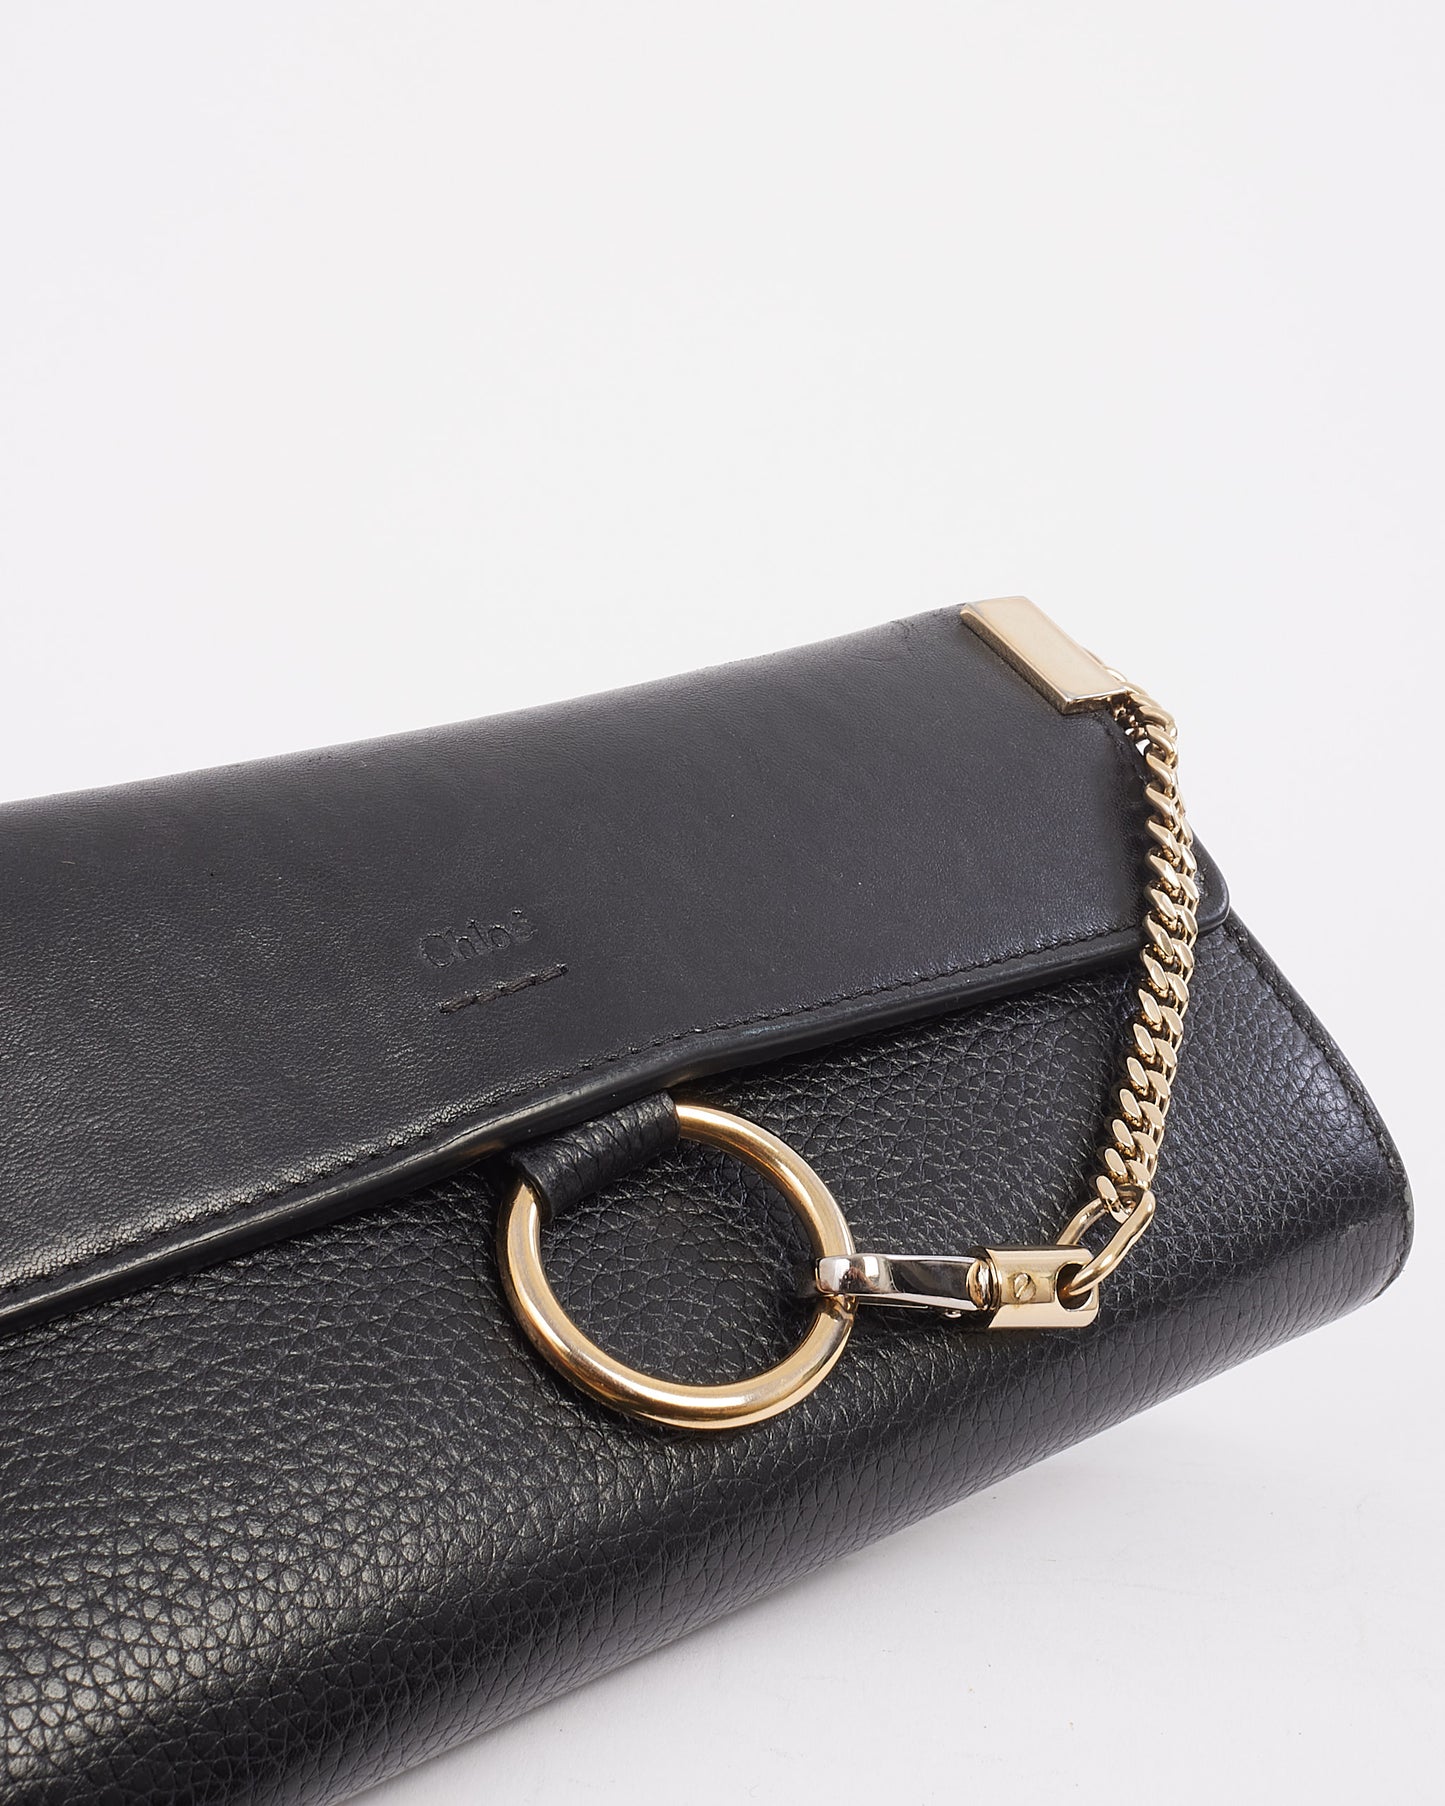 Chloé Black Leather Faye Long Wallet